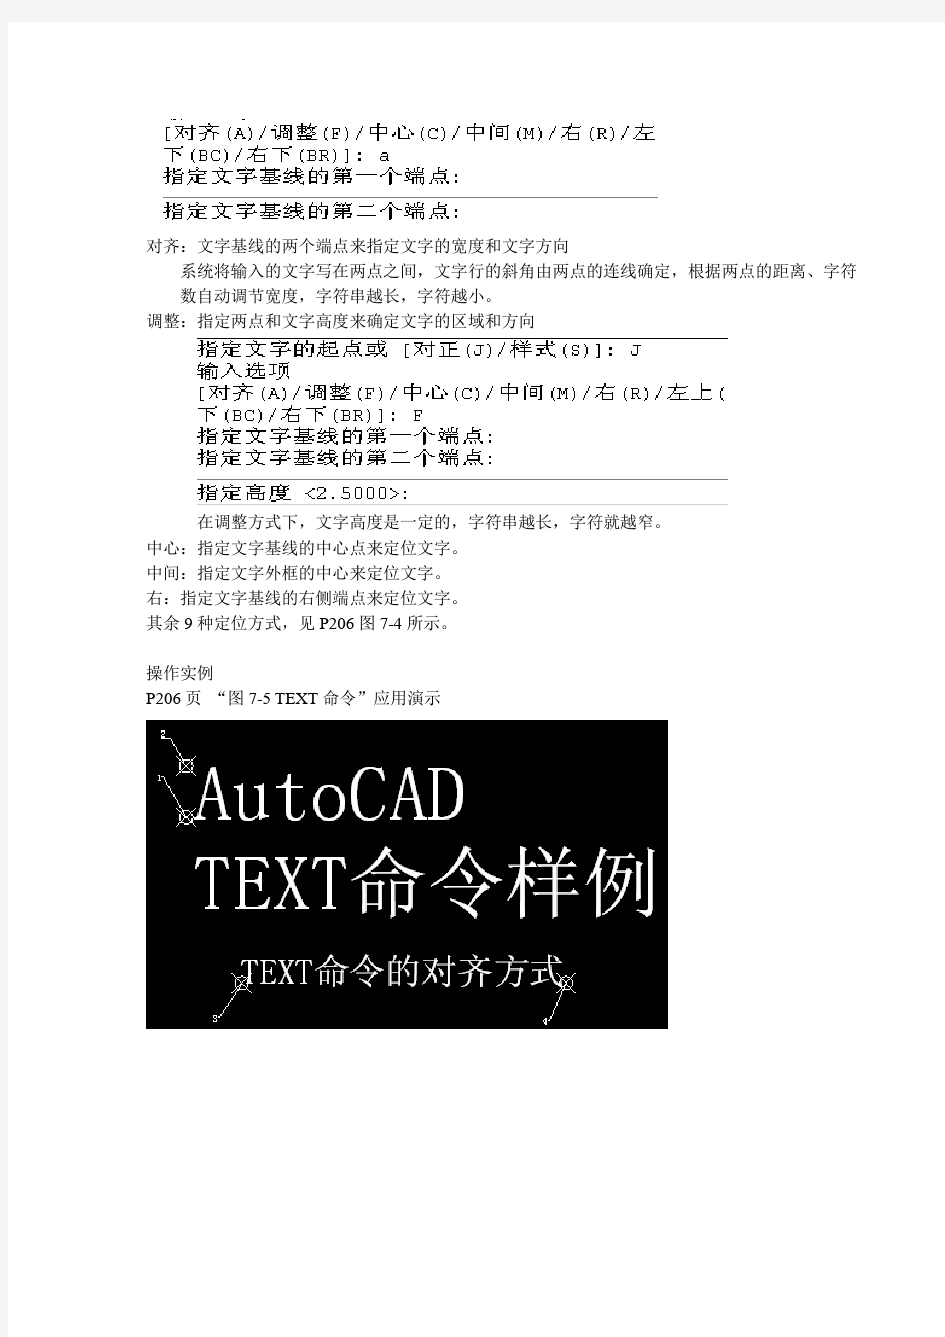 CAD文字标注与注释的操作方法